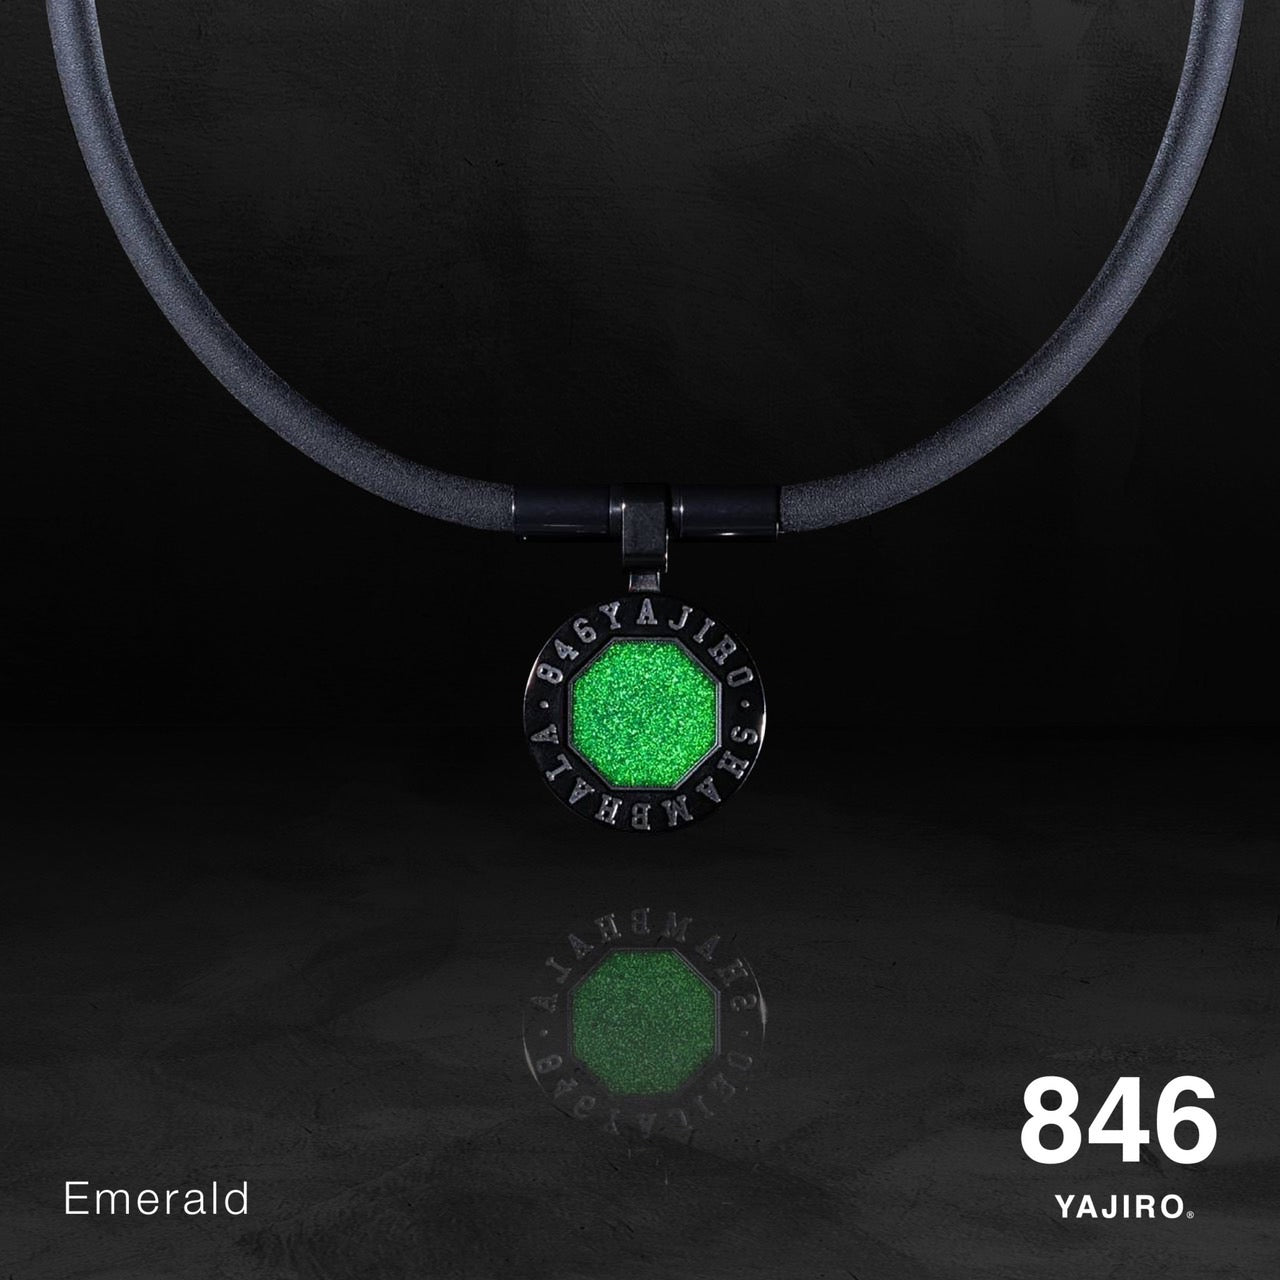 スポーツネックレス〕 NEW SHAMBHALA Necklace 【Emerald】 – 846YAJIROオンラインショップ